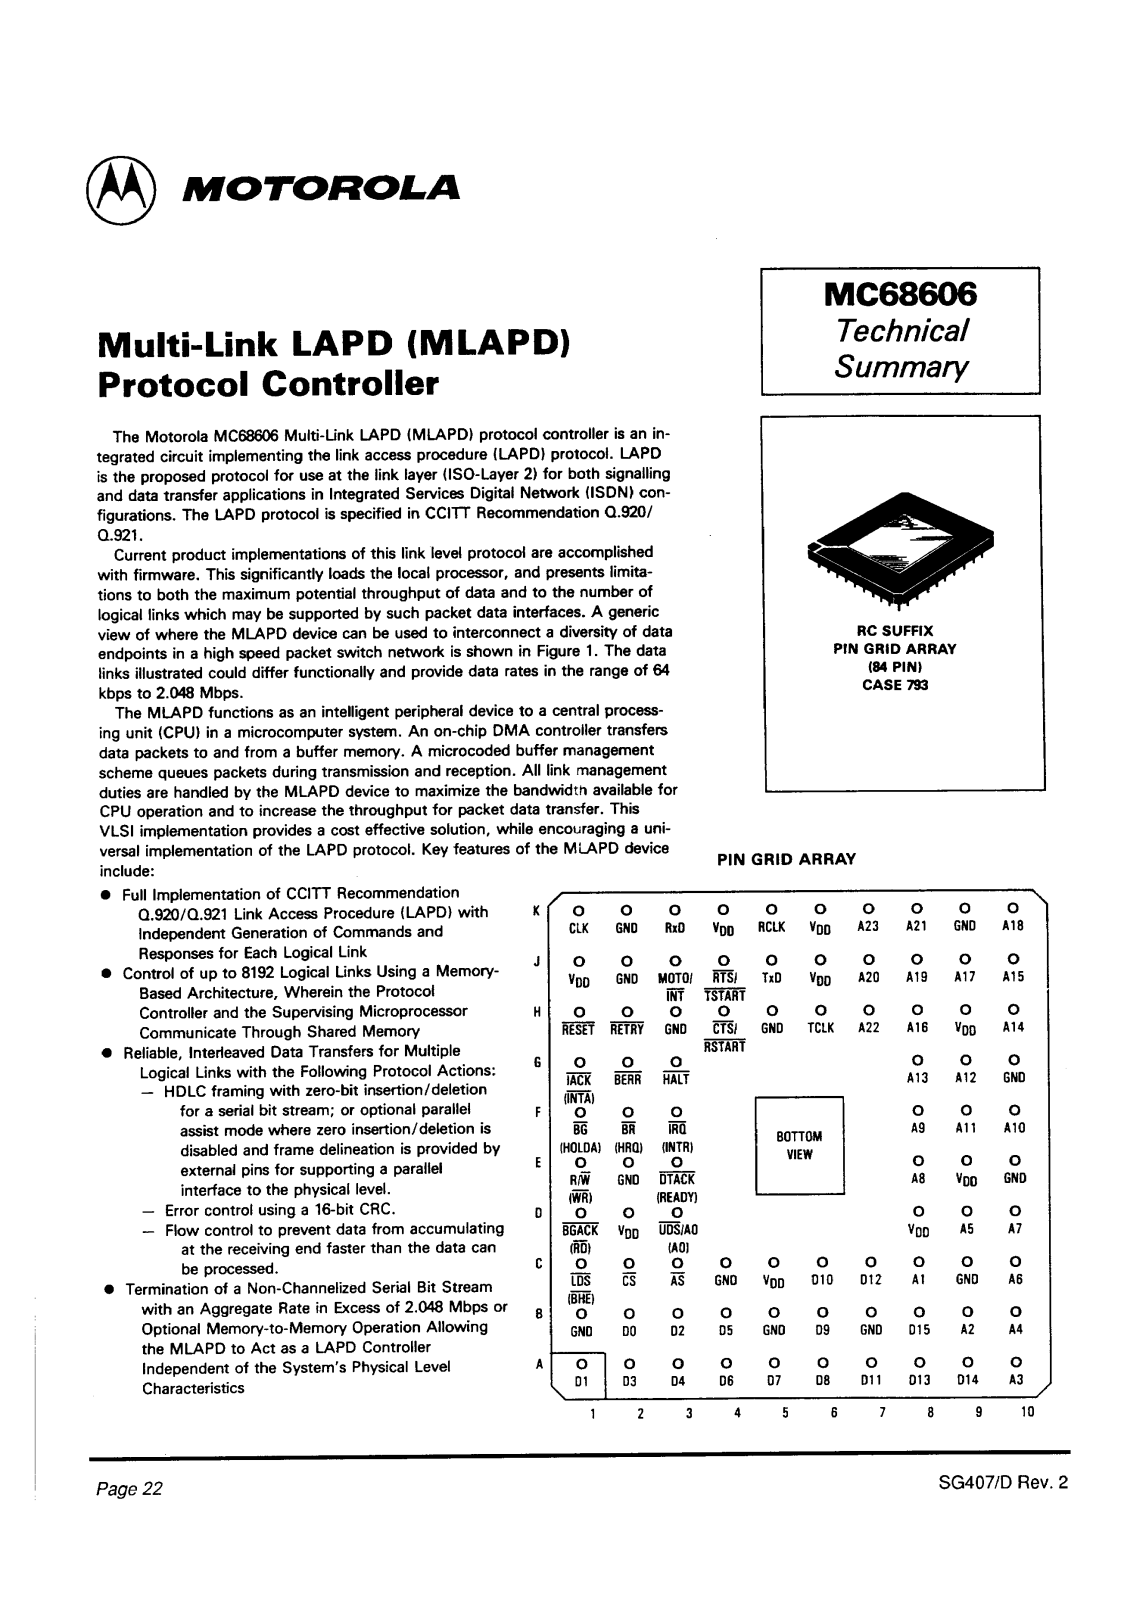 Motorola MC68606RC, MC68606 Datasheet